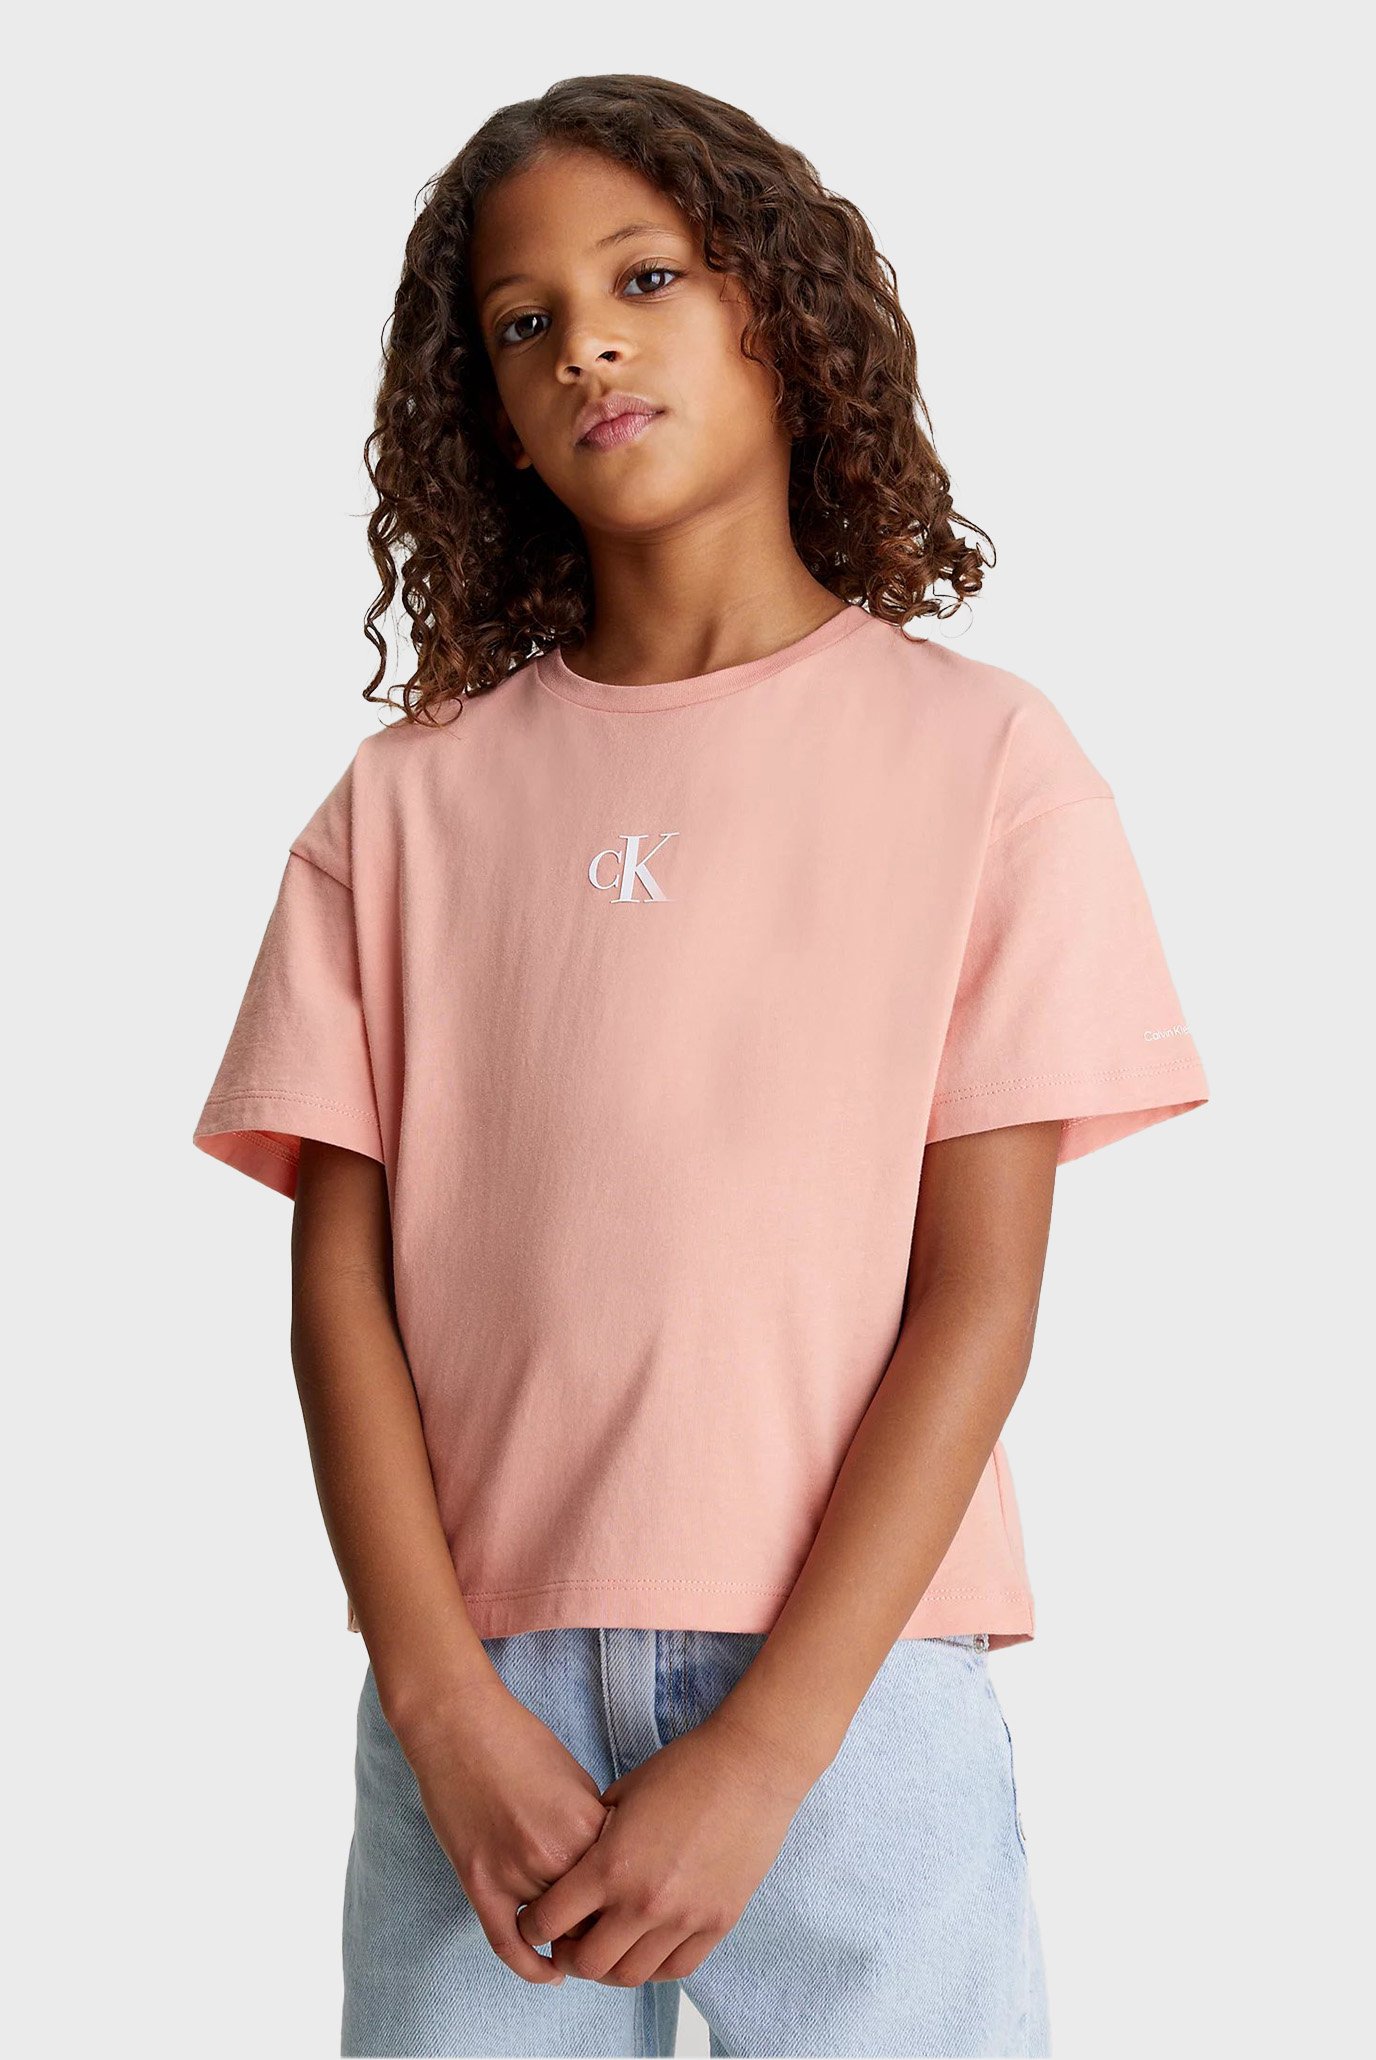 Детская розовая футболка CK LOGO BOXY 1